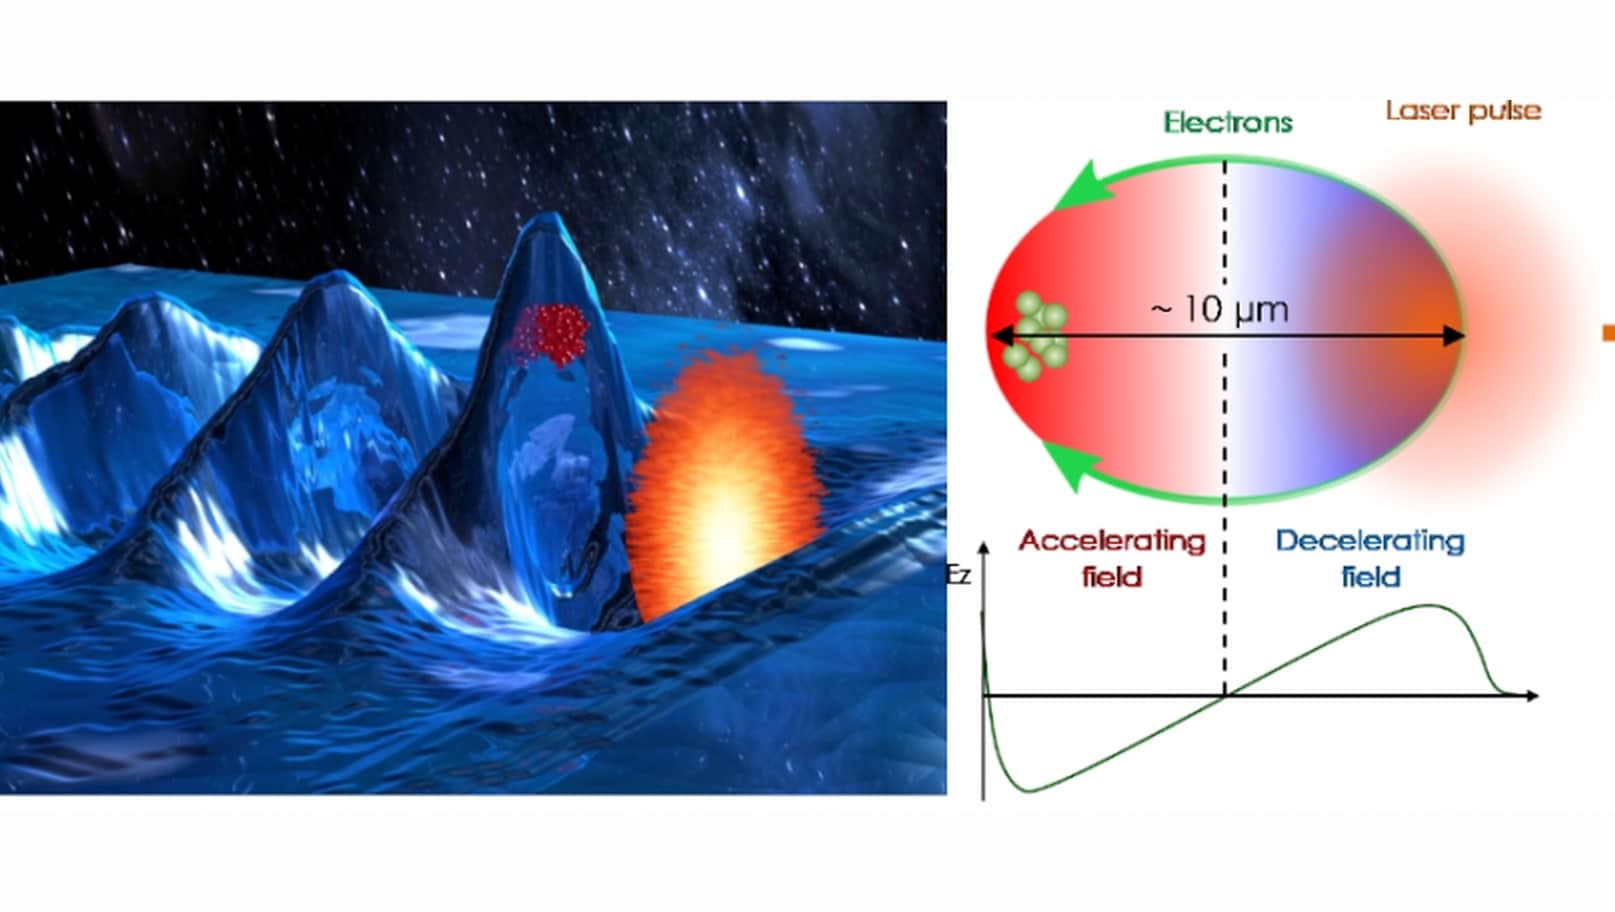 Художественная интерпретация лазерного кильватерного ускорения и его схема. Оранжевым показан лазерный импульс, красным – ускоряемые электроны, а высота (глубина) волны соответствует плотности отрицательного (положительного) заряда. На правой части зеленым показаны траектории электронов относительно сгустка лазерного импульса, и их скопление в задней части пузырька.